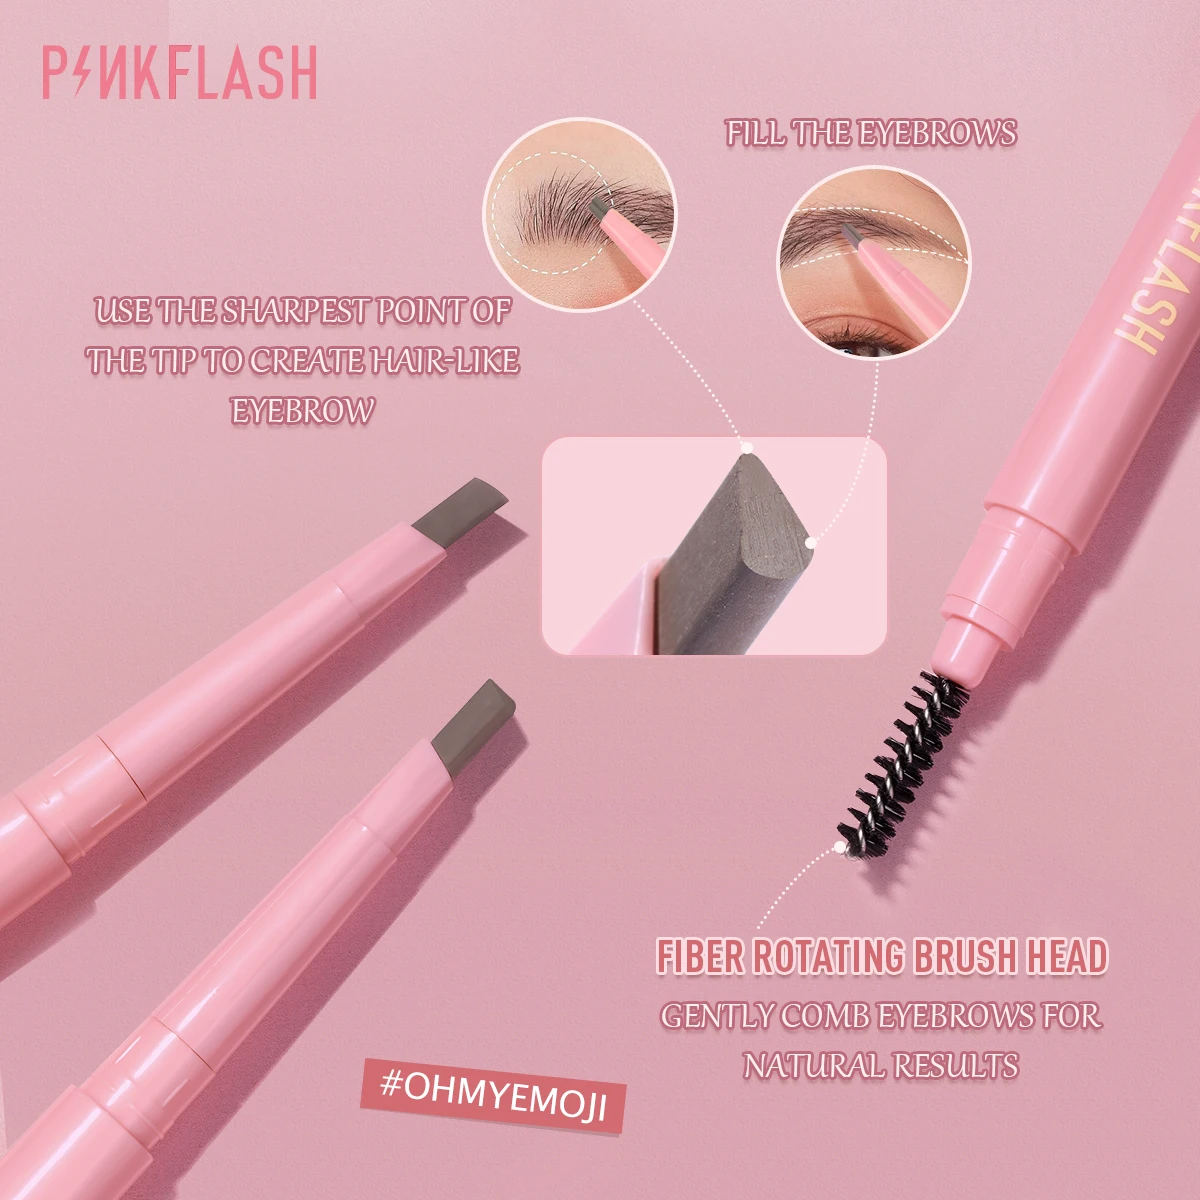 PINKFLASH matita per sopracciglia automatica impermeabile di lunga durata ad alta pigmentazione facile da sfumare trucco morbido senza crudeltà per sopracciglia